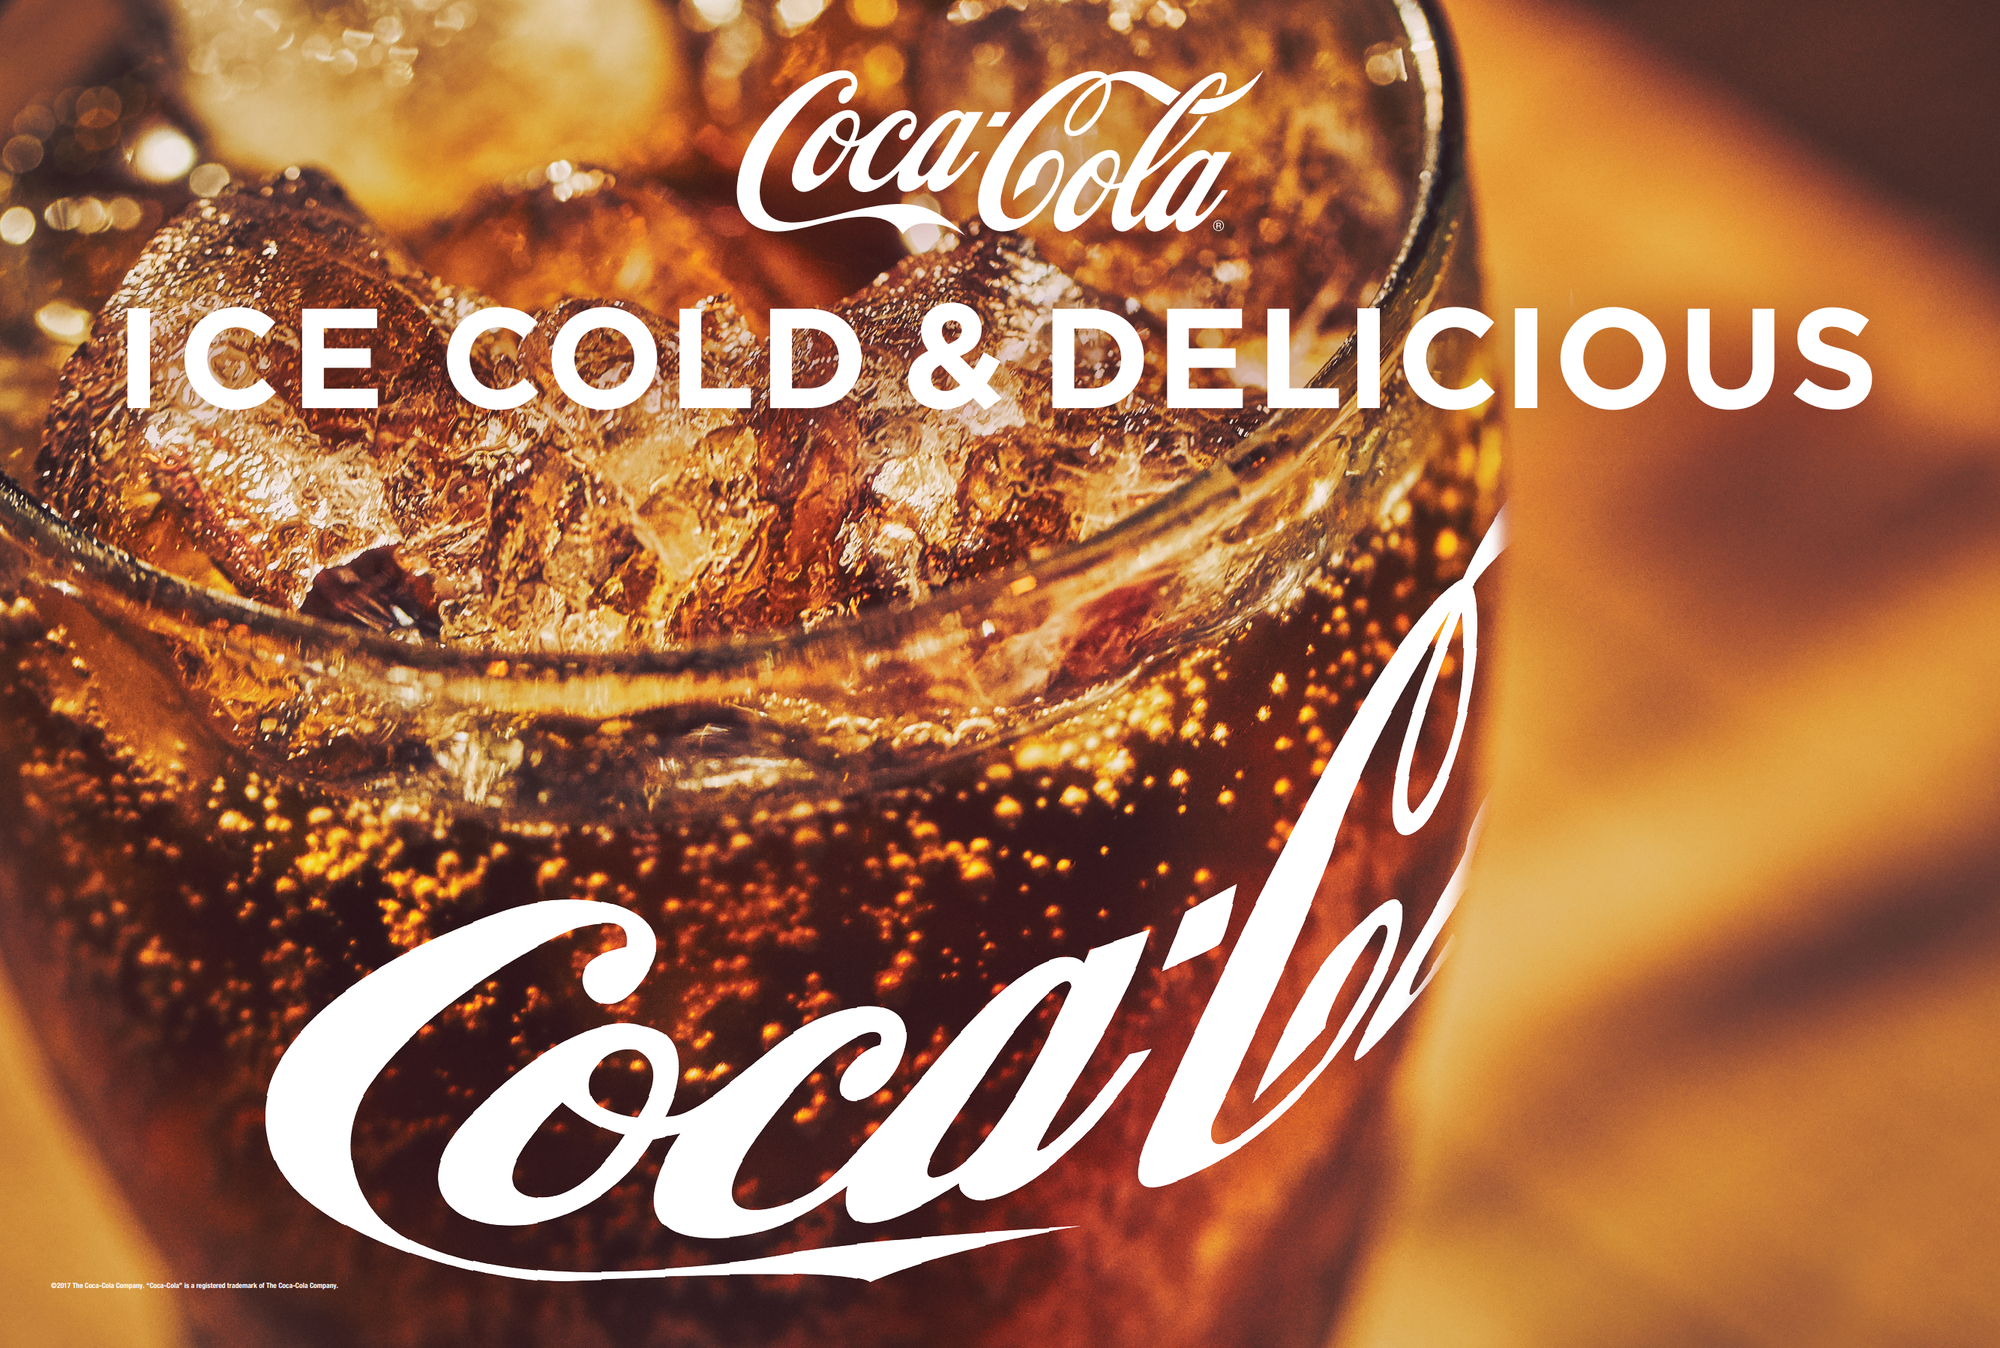 Macon Coca-Cola provides event refreshments